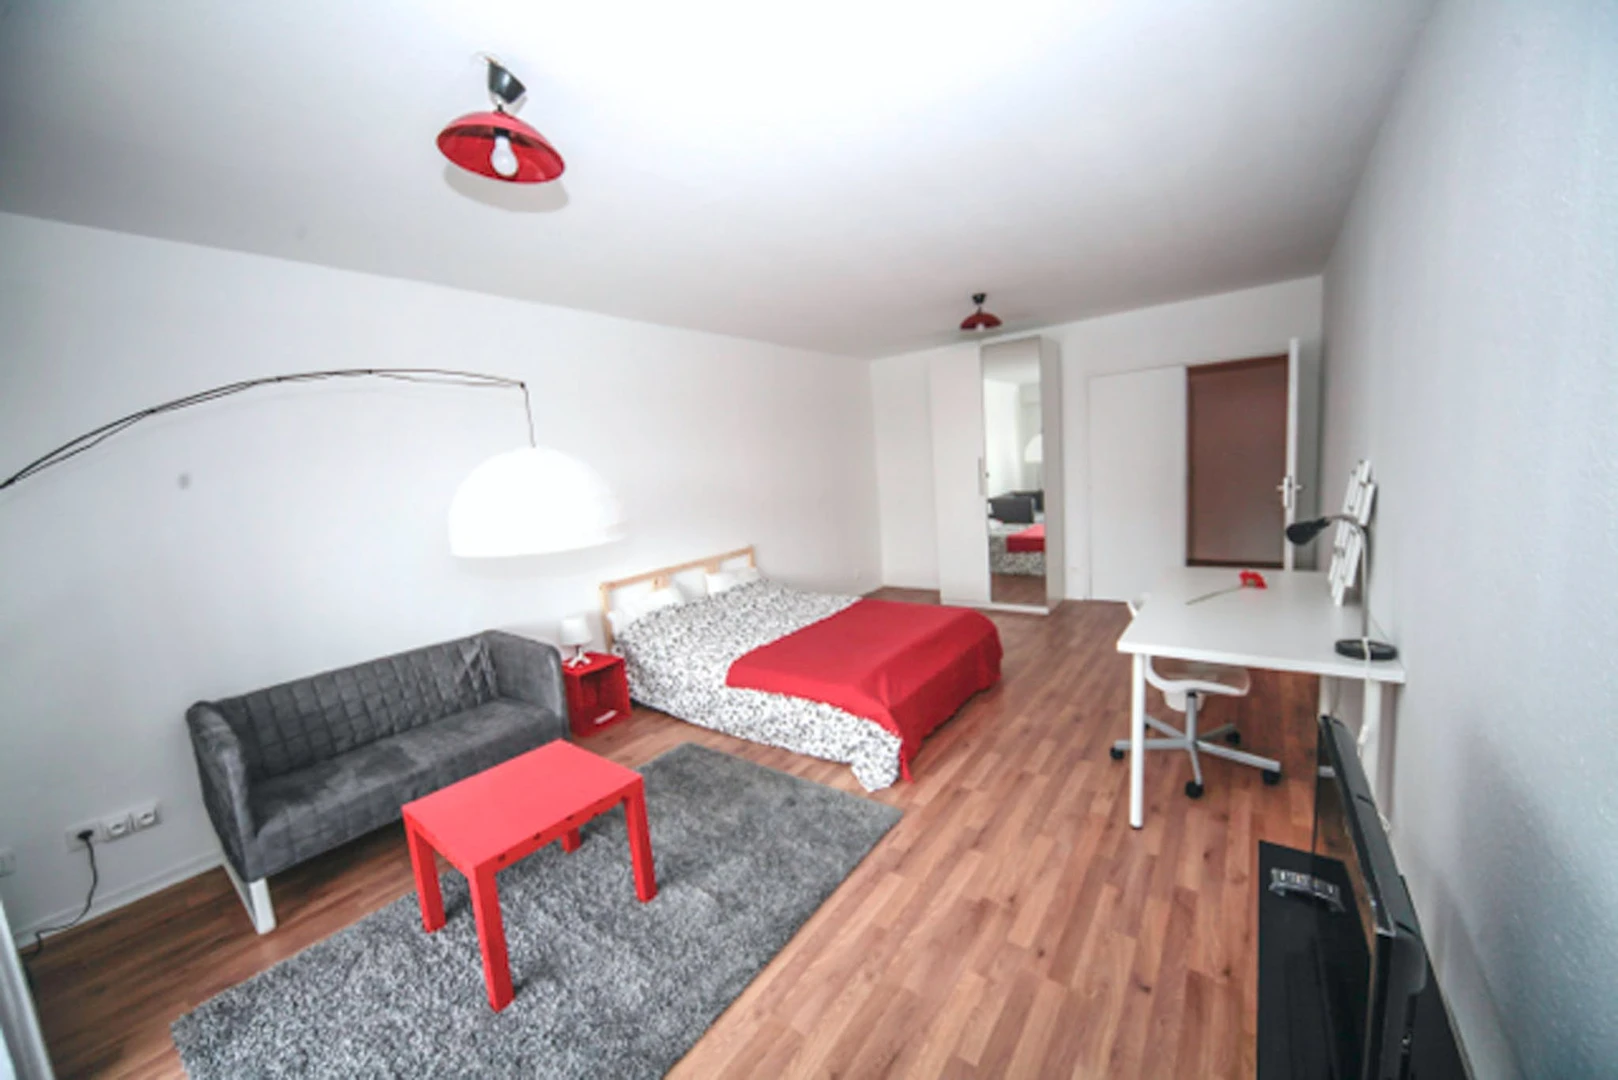 Stanza in affitto in appartamento condiviso a Strasburgo